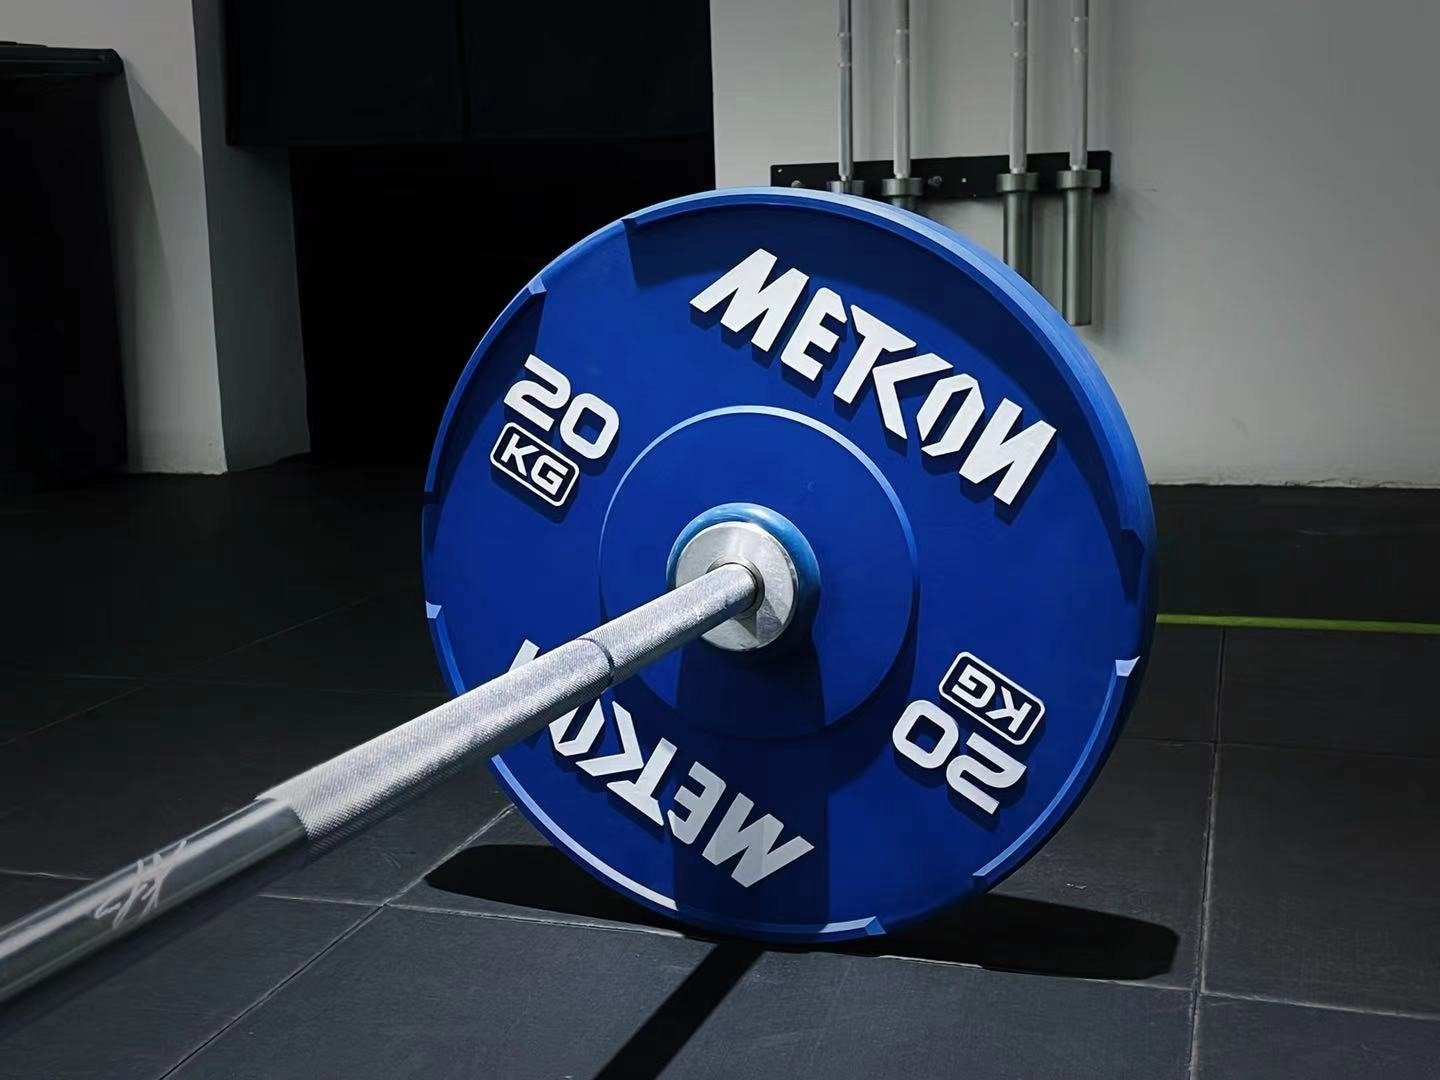 METCON 10 kg Hantelscheibe Gewischtscheibe Olympische Training,